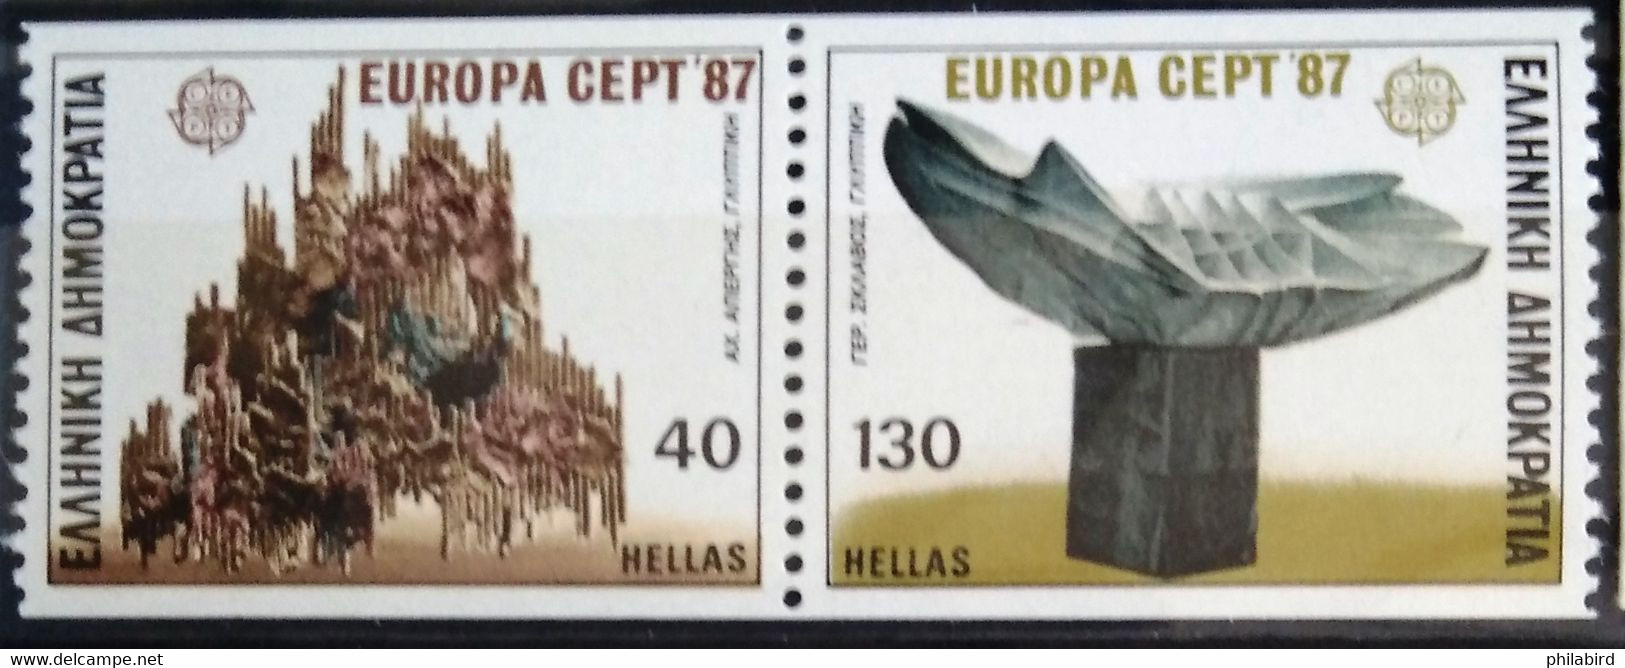 EUROPA 1987 - GRECE                  N° 1634a                        NEUF** - 1987